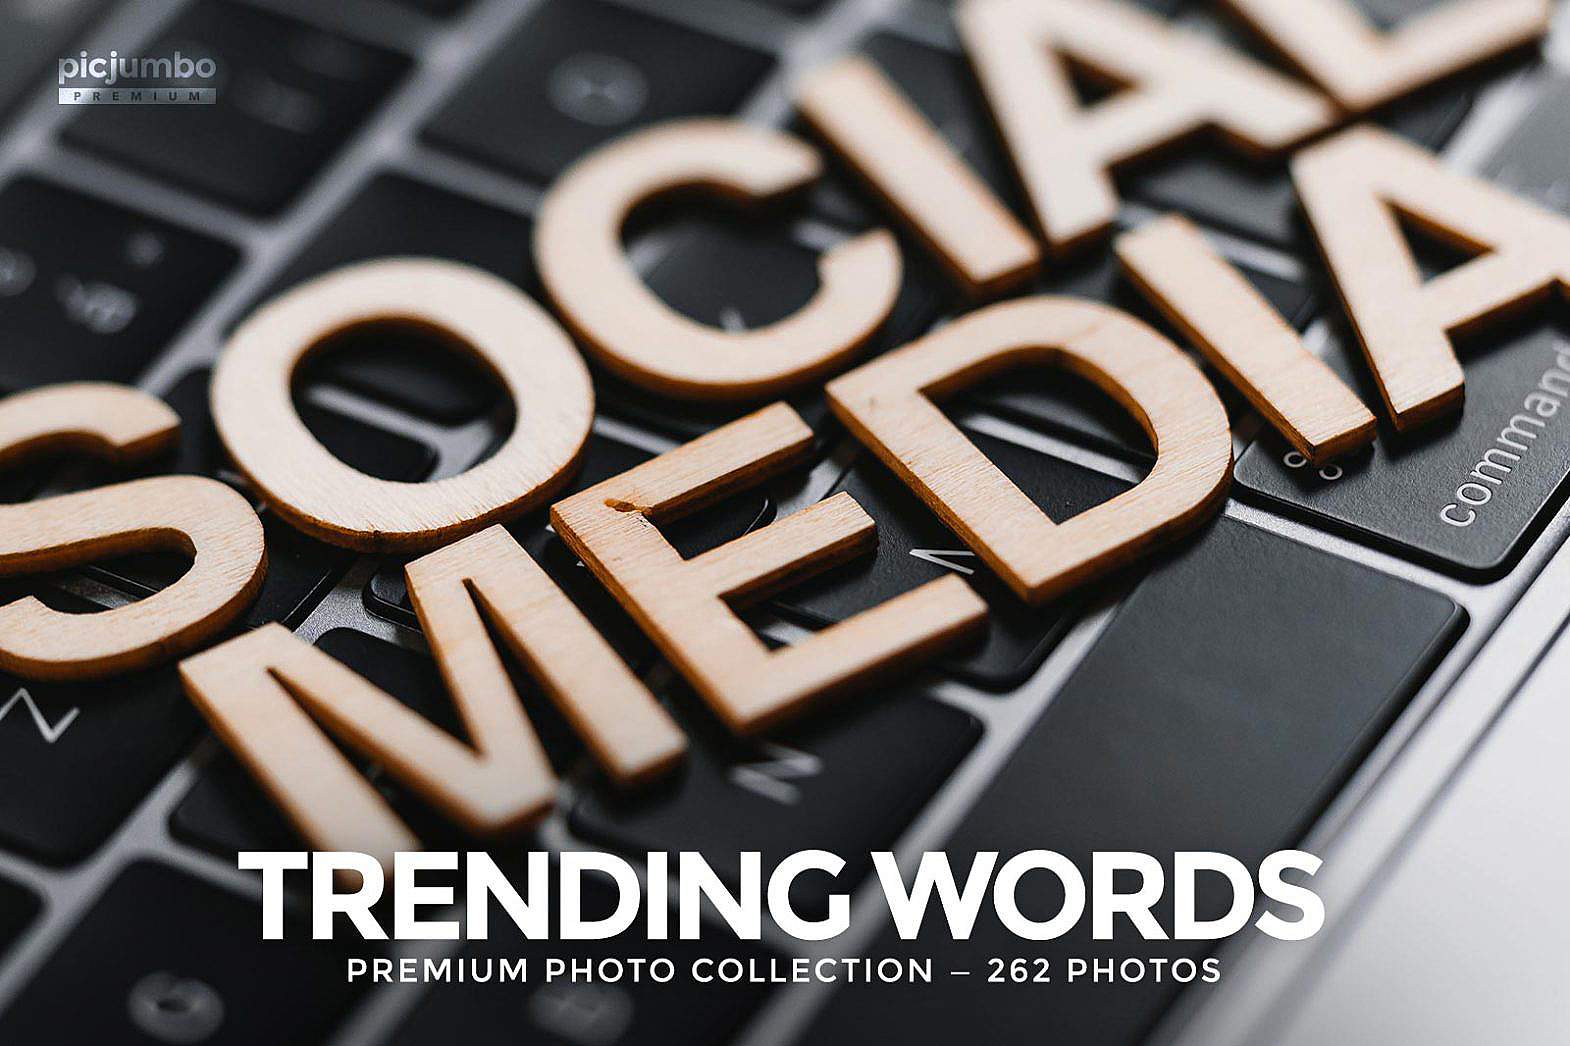 Trending Words Stock Photo Collection picjumbo